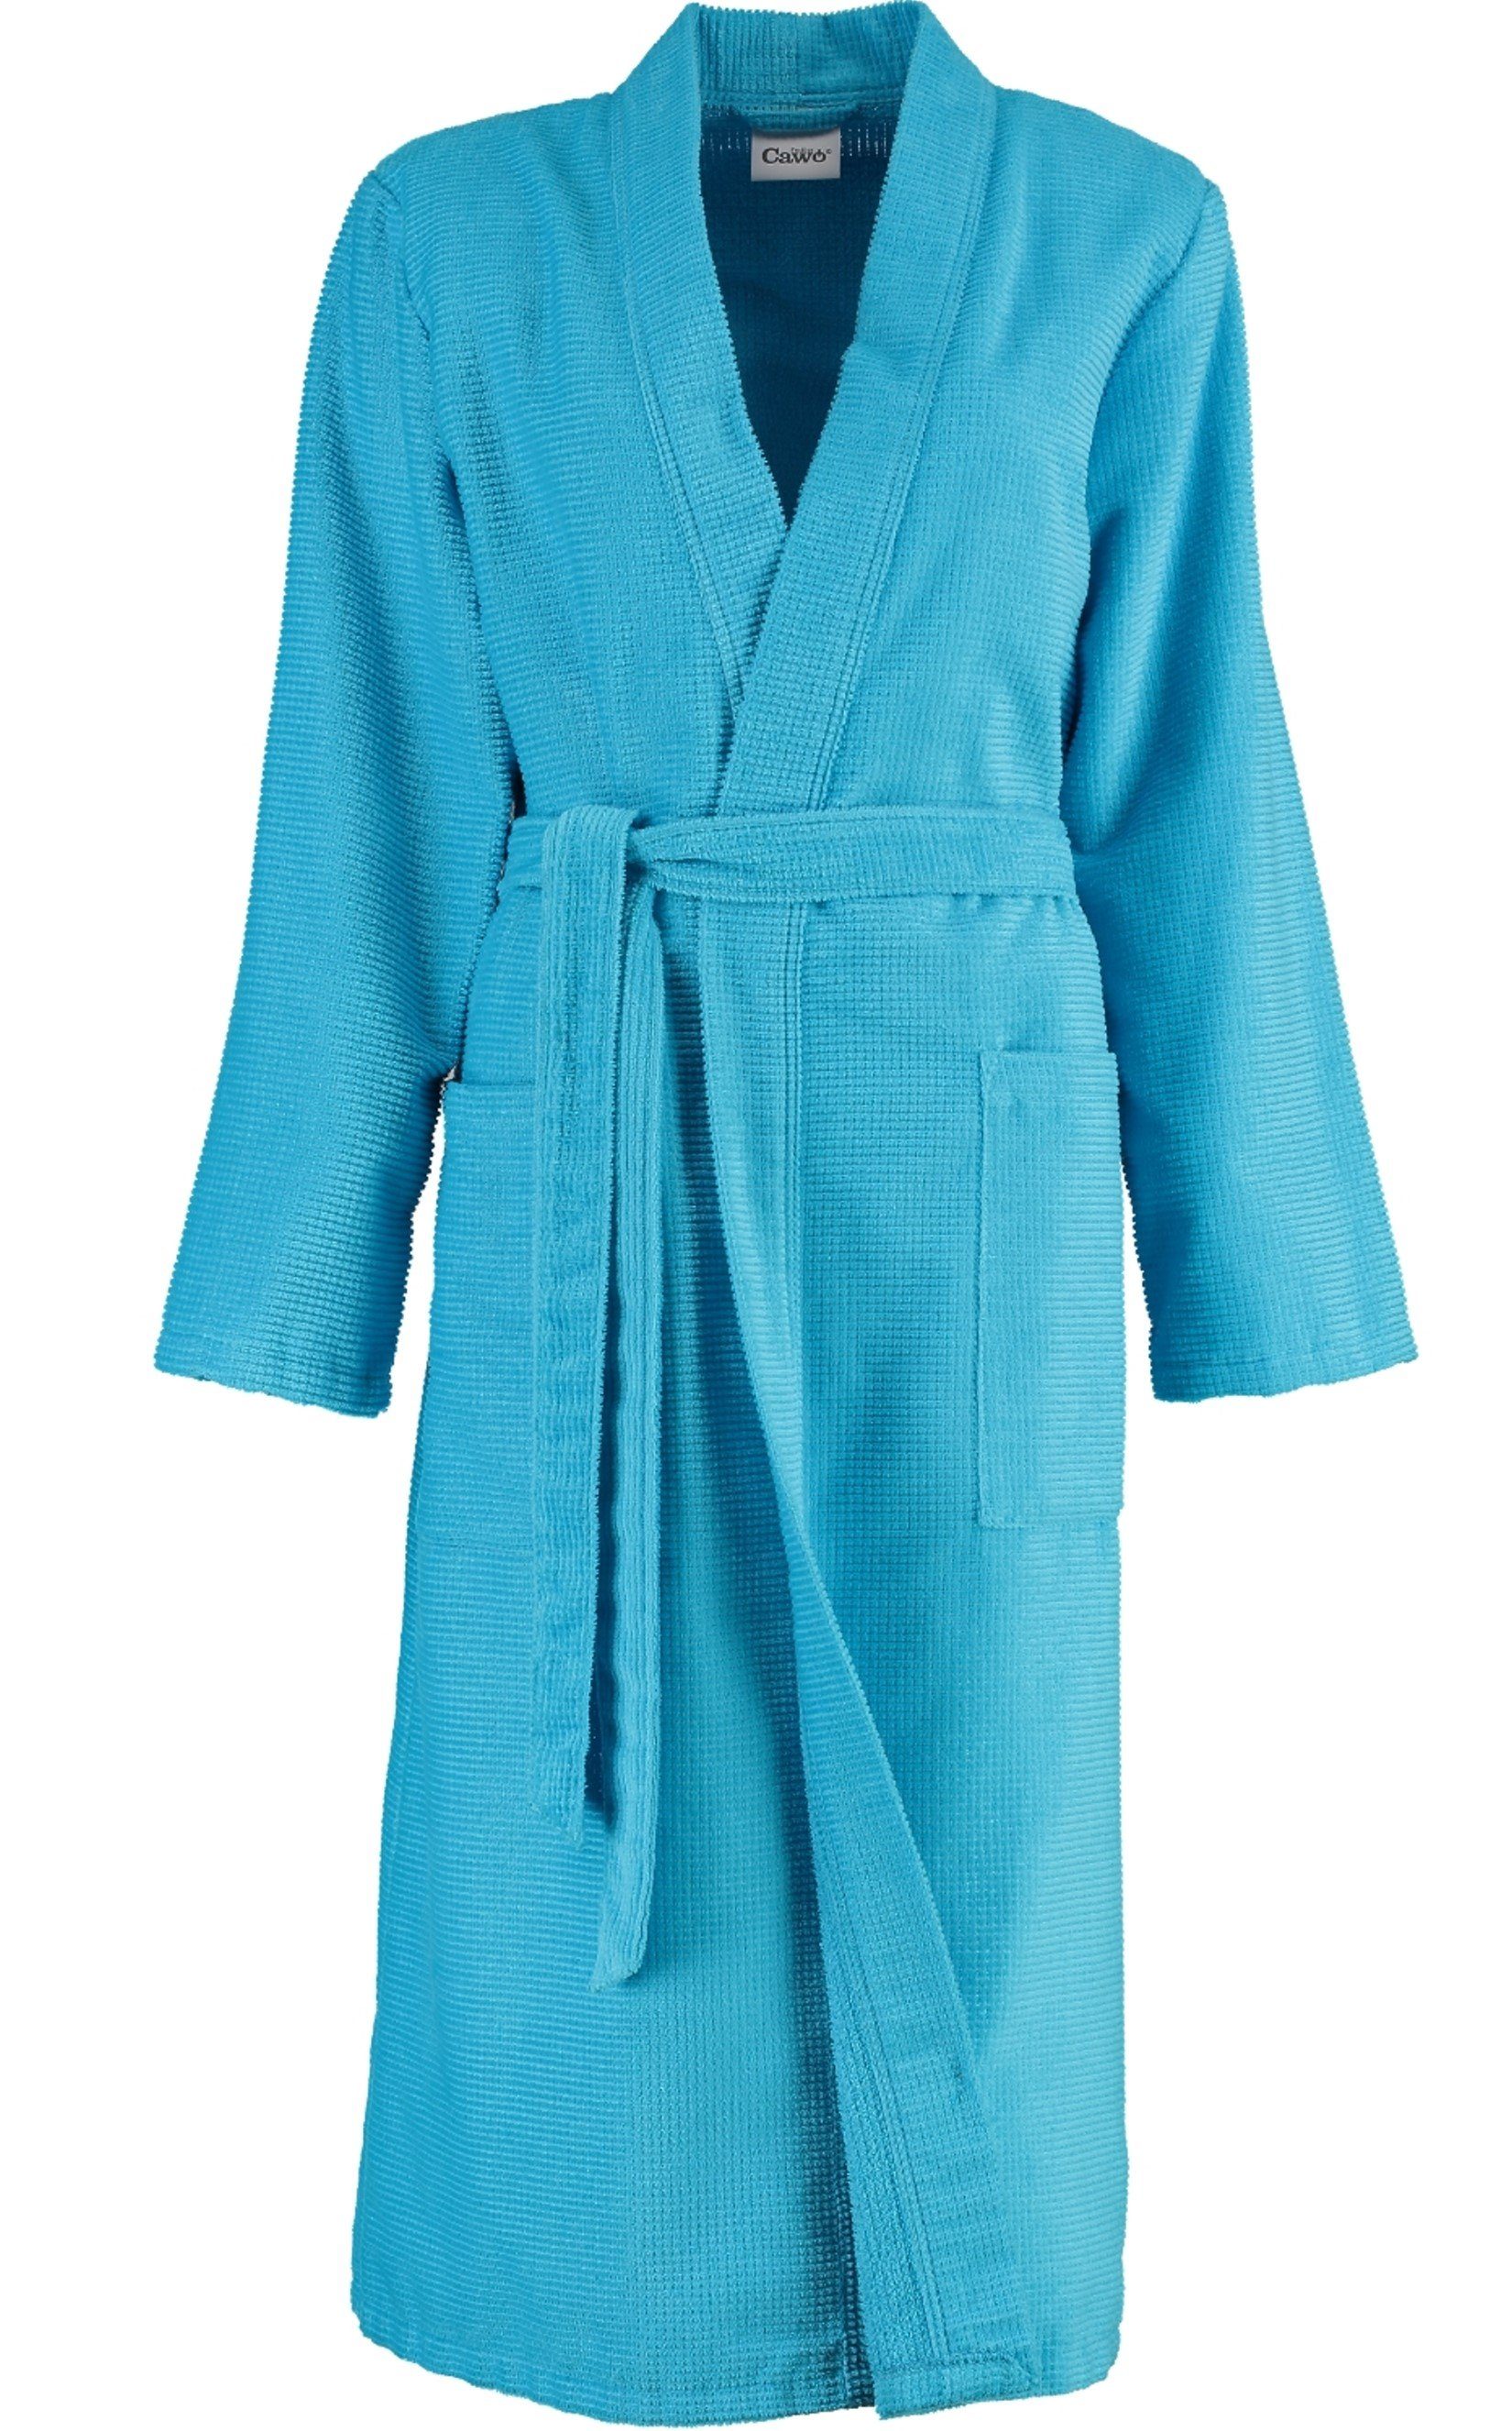 Cawö Damenbademantel, Langform, Baumwolle, Kimono-Kragen, Gürtel,  Waffelpique Qualität, Material: 100% Baumwolle